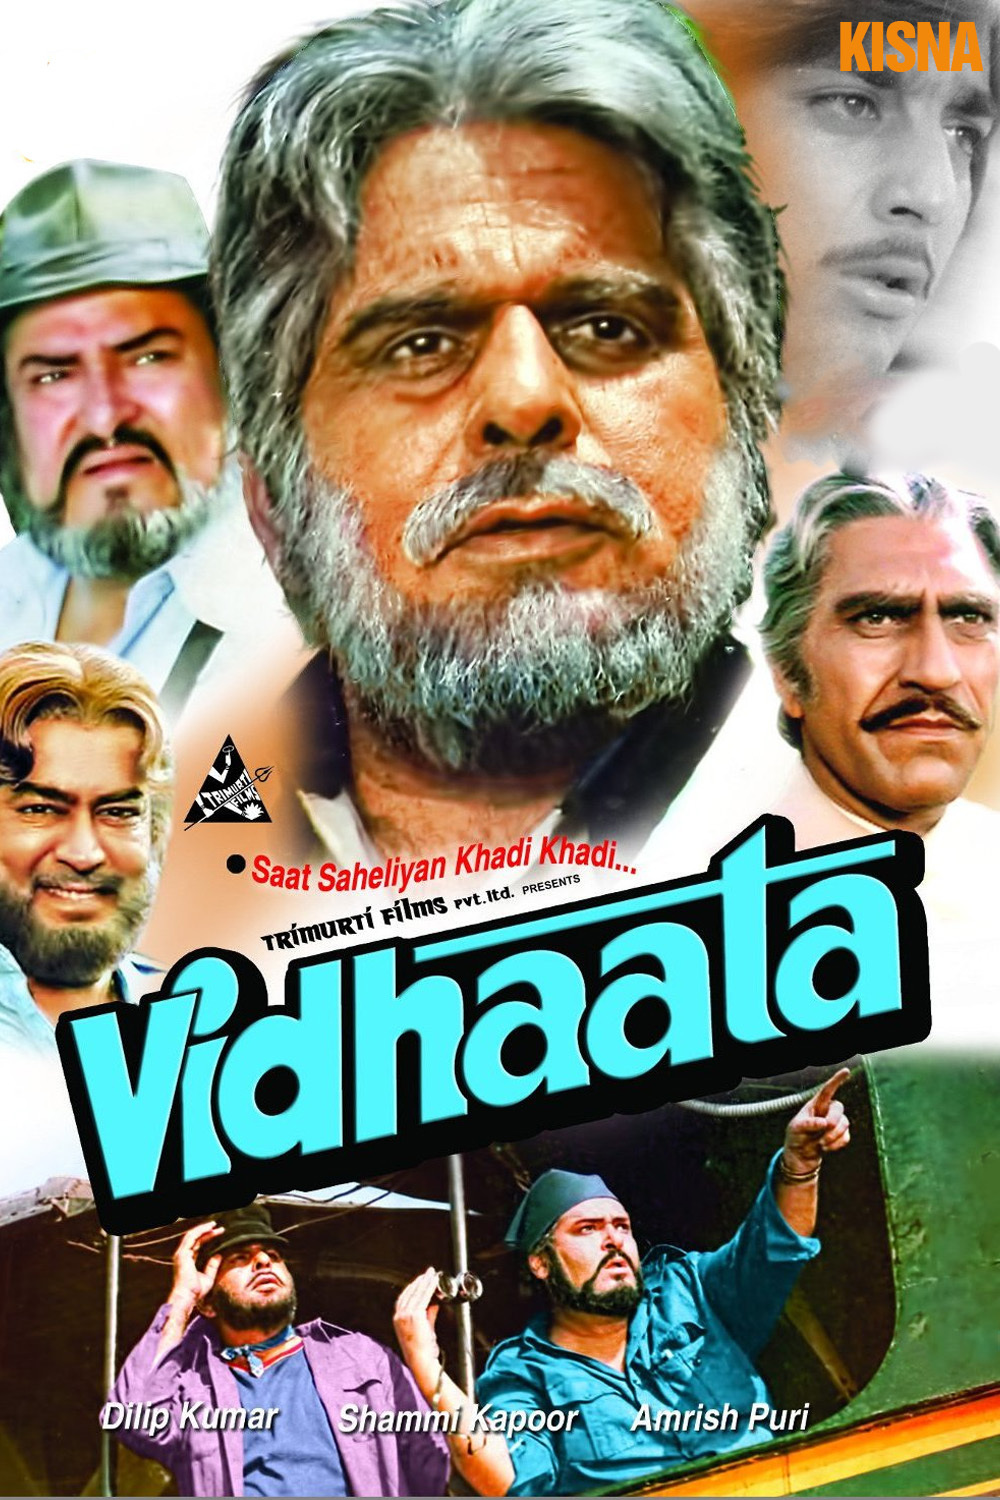 affiche du film Vidhaata